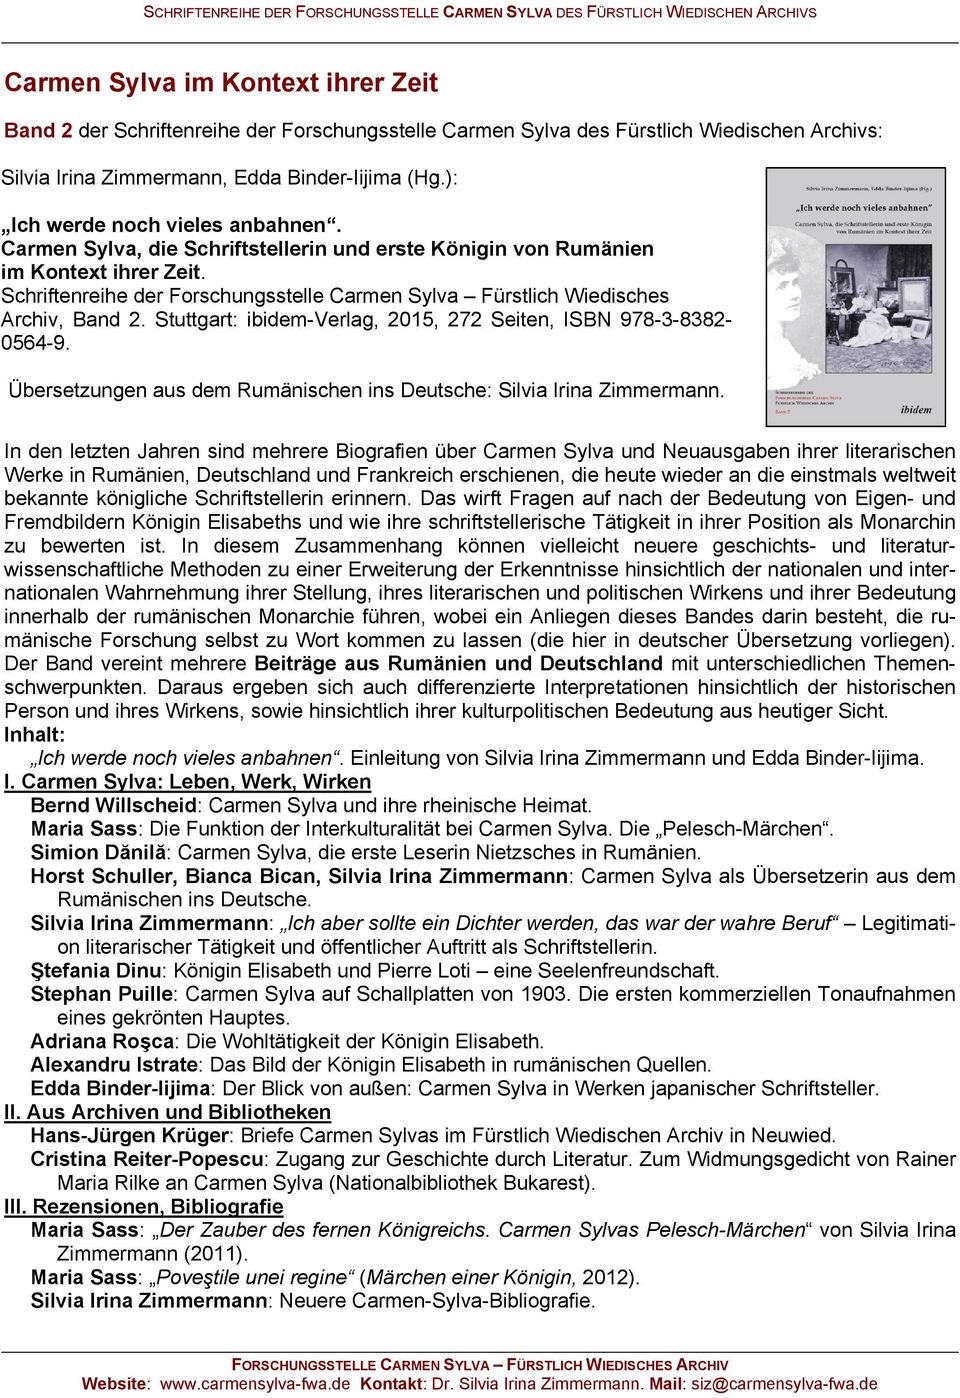 Schriftenreihe der Forschungsstelle Carmen Sylva Fürstlich Wiedisches Archiv, Band 2. Stuttgart: ibidem-verlag, 2015, 272 Seiten, ISBN 978-3-8382-0564-9.